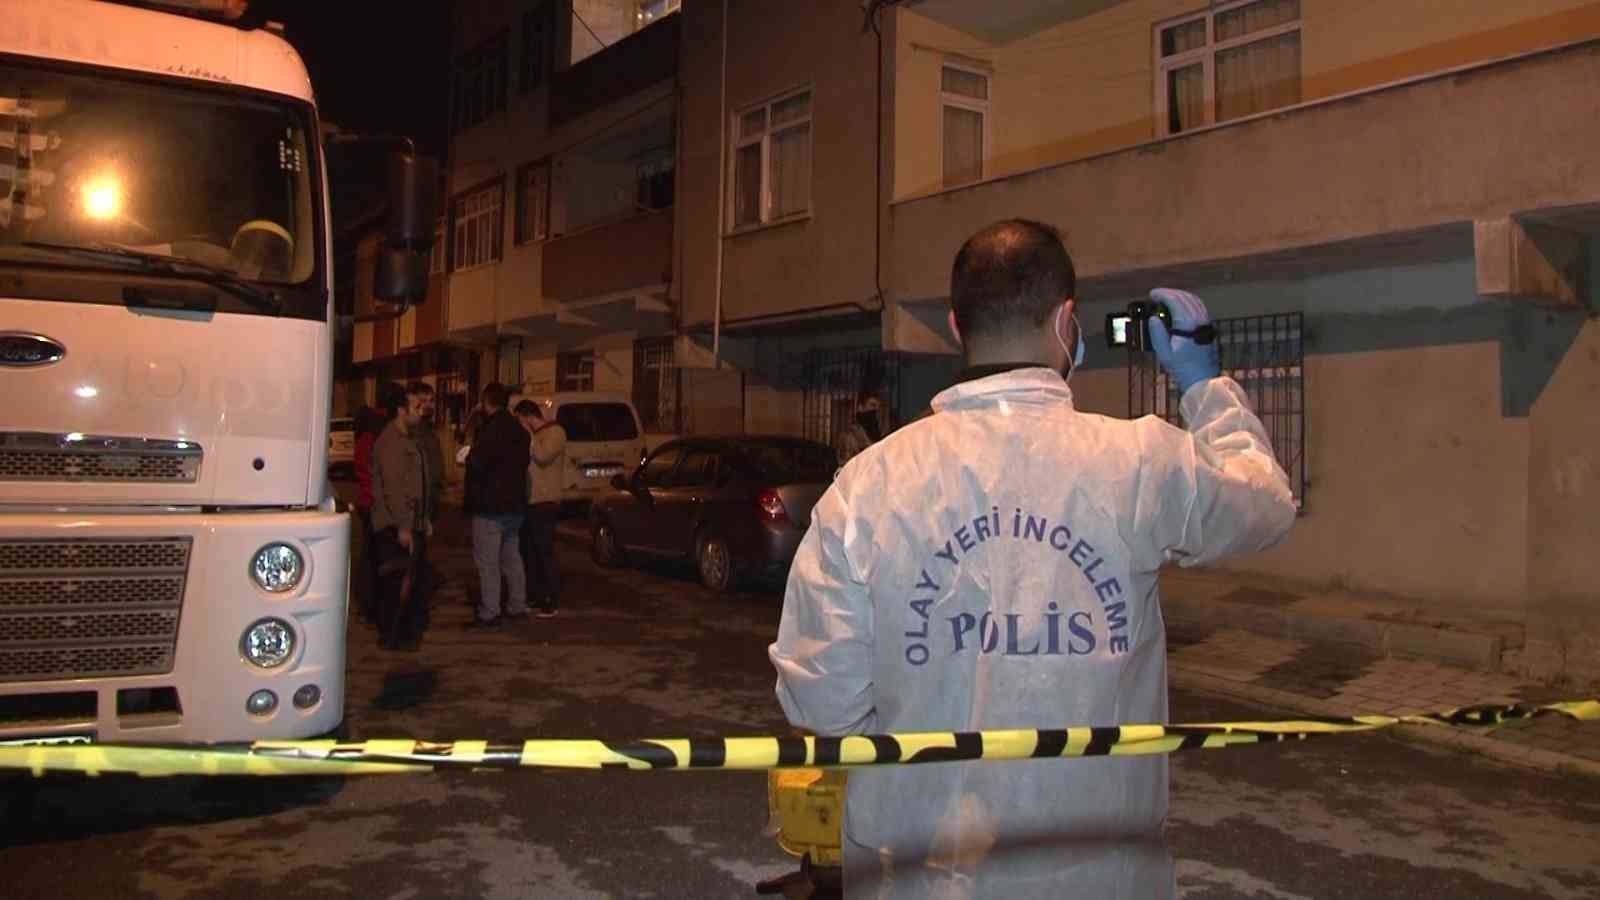 Sancaktepe’de cinnet getiren şahıs dehşet saçtı: 2 bekçi pompalı tüfekle yaralandı #istanbul